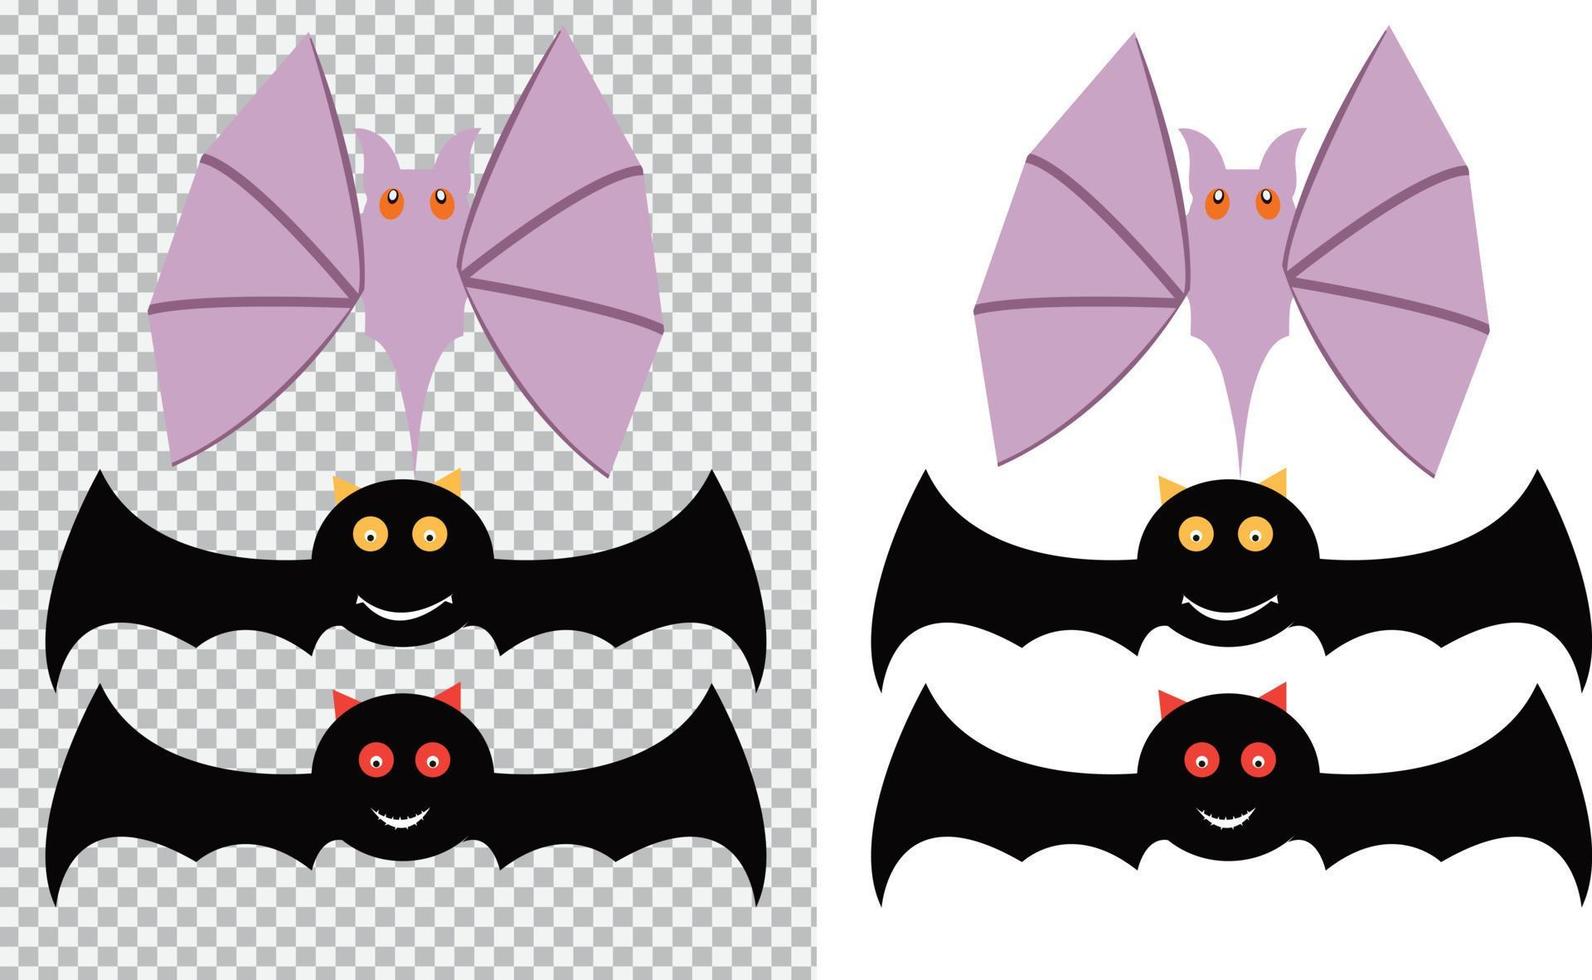 Halloween nero pipistrello cartone animato silhouette vampiro vettore design illustrazione